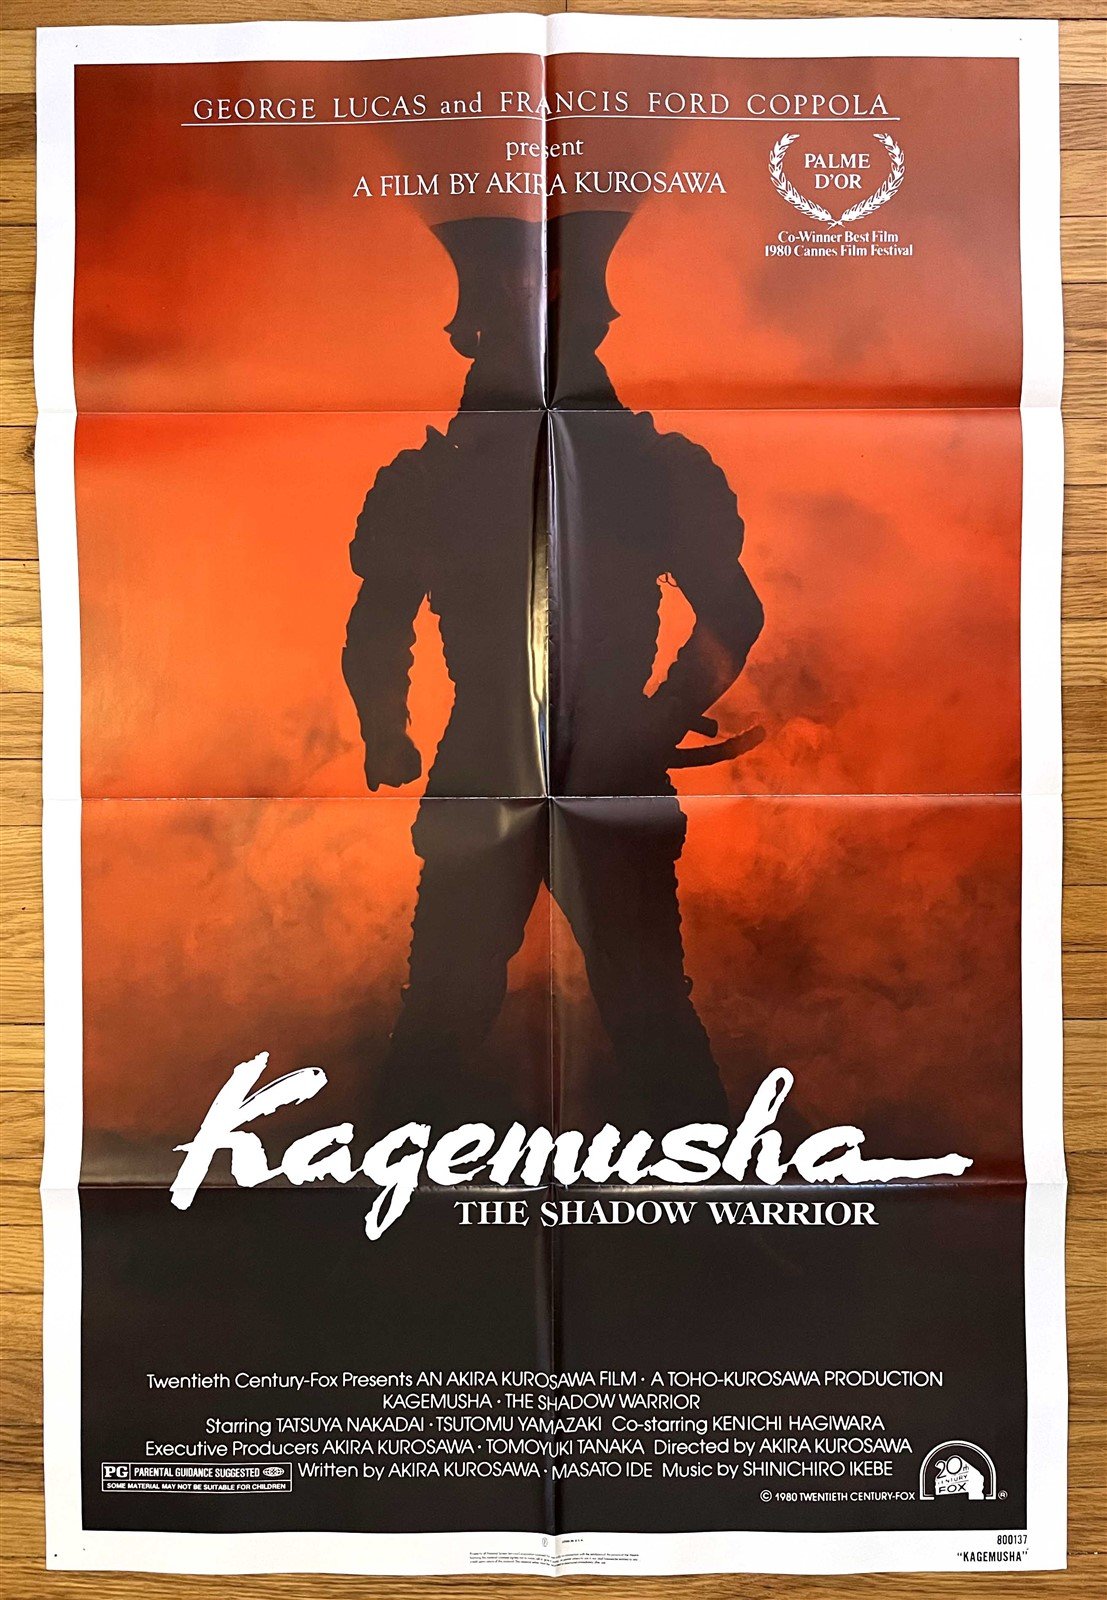 Akira Kurosawa KAGEMUSHA SHADOW WARRIOR original 27x41 movie poster 1980